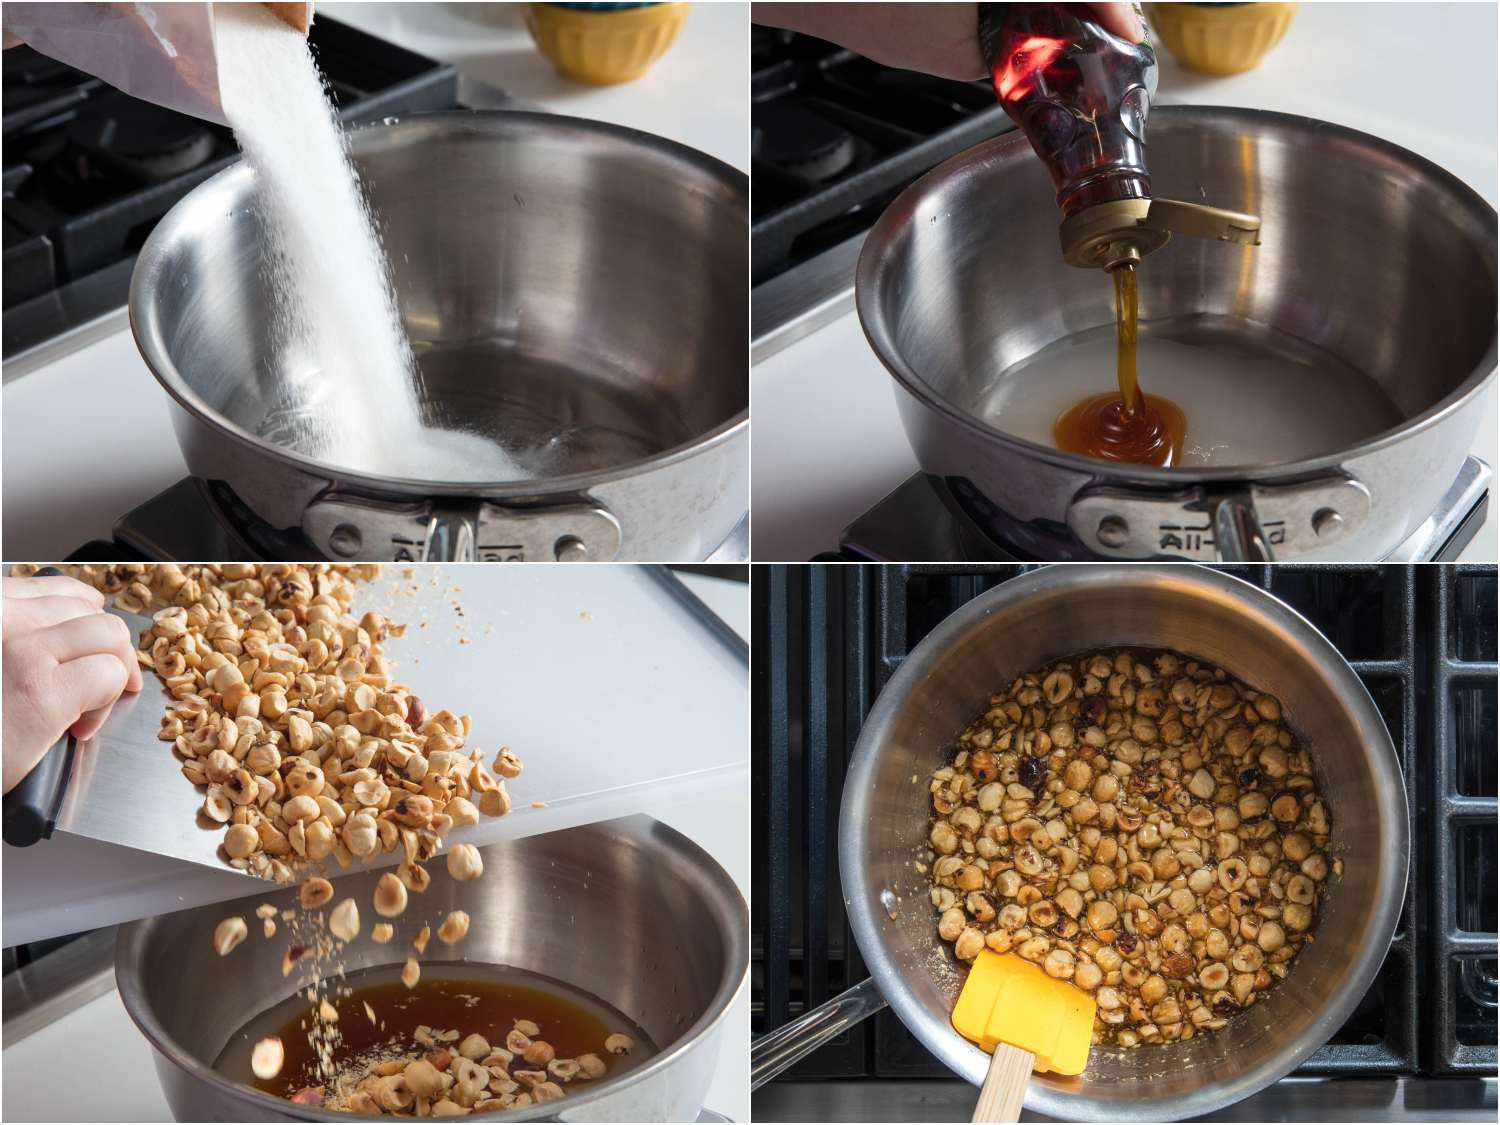 制作榛子脆饼的拼贴照片:在酱汁中加入糖和金色糖浆，加入切碎的榛子，烹饪至焦糖化。